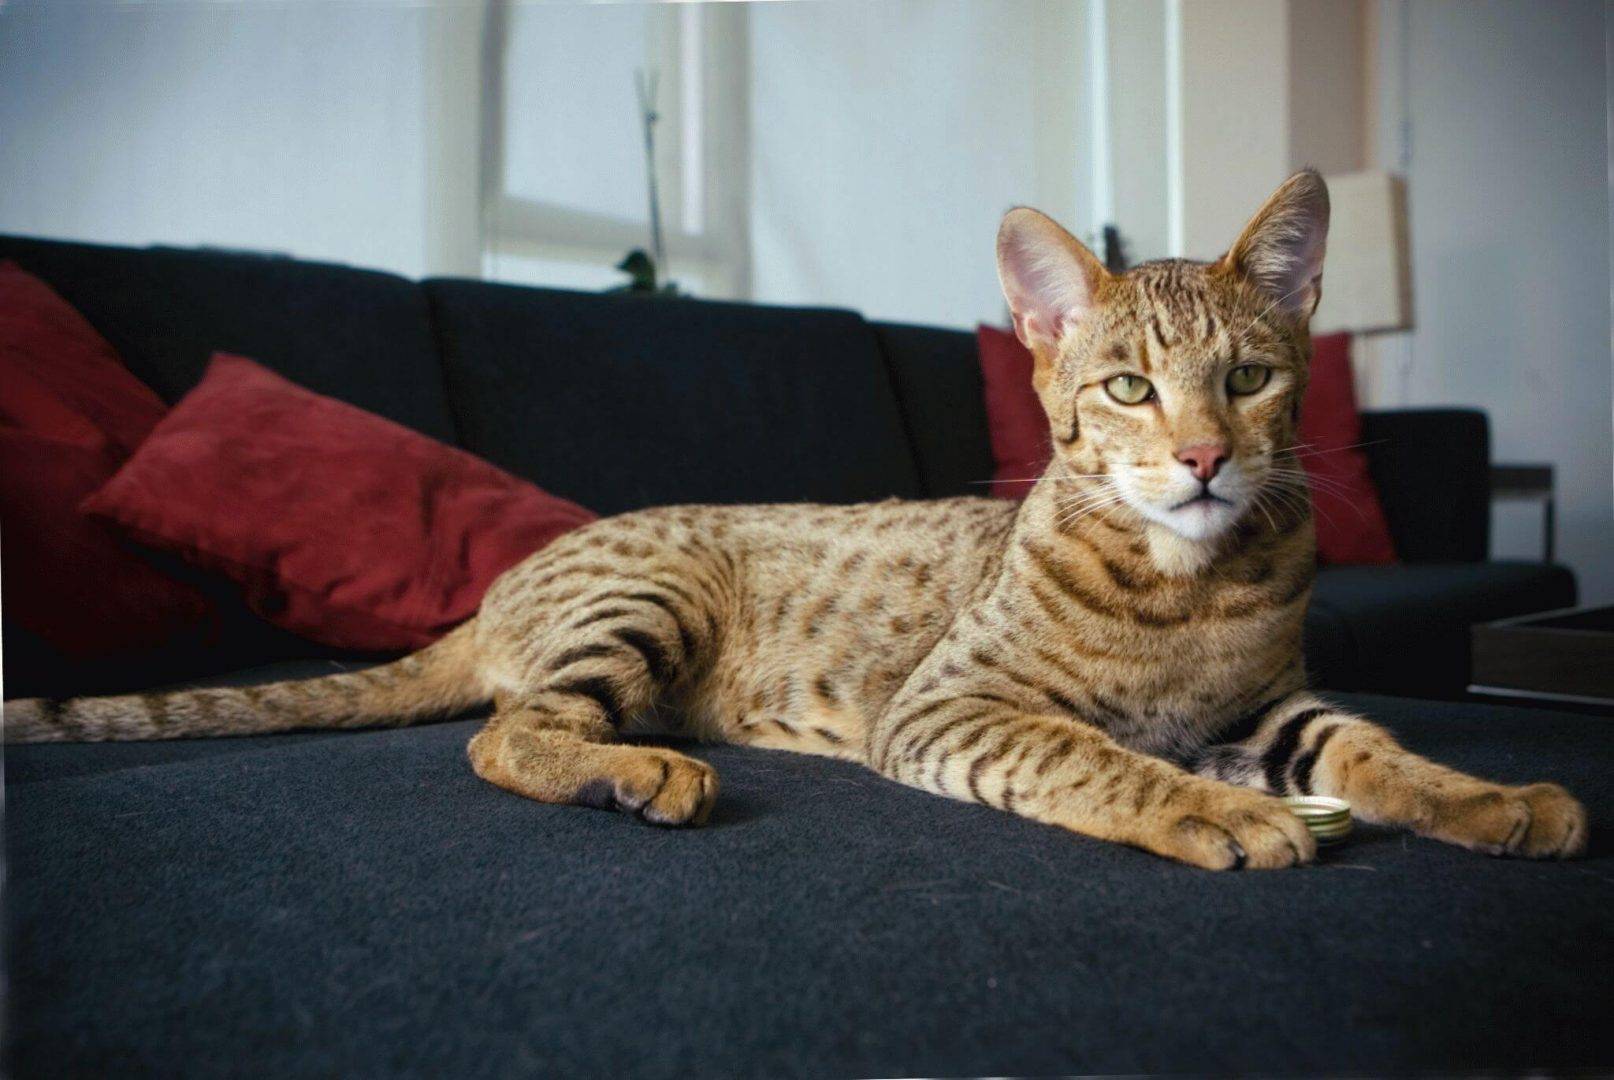 Кошка саванна - гибрид сервала: особенности породы, фото котёнка и взрослого кота, уход за питомцем и его содержание